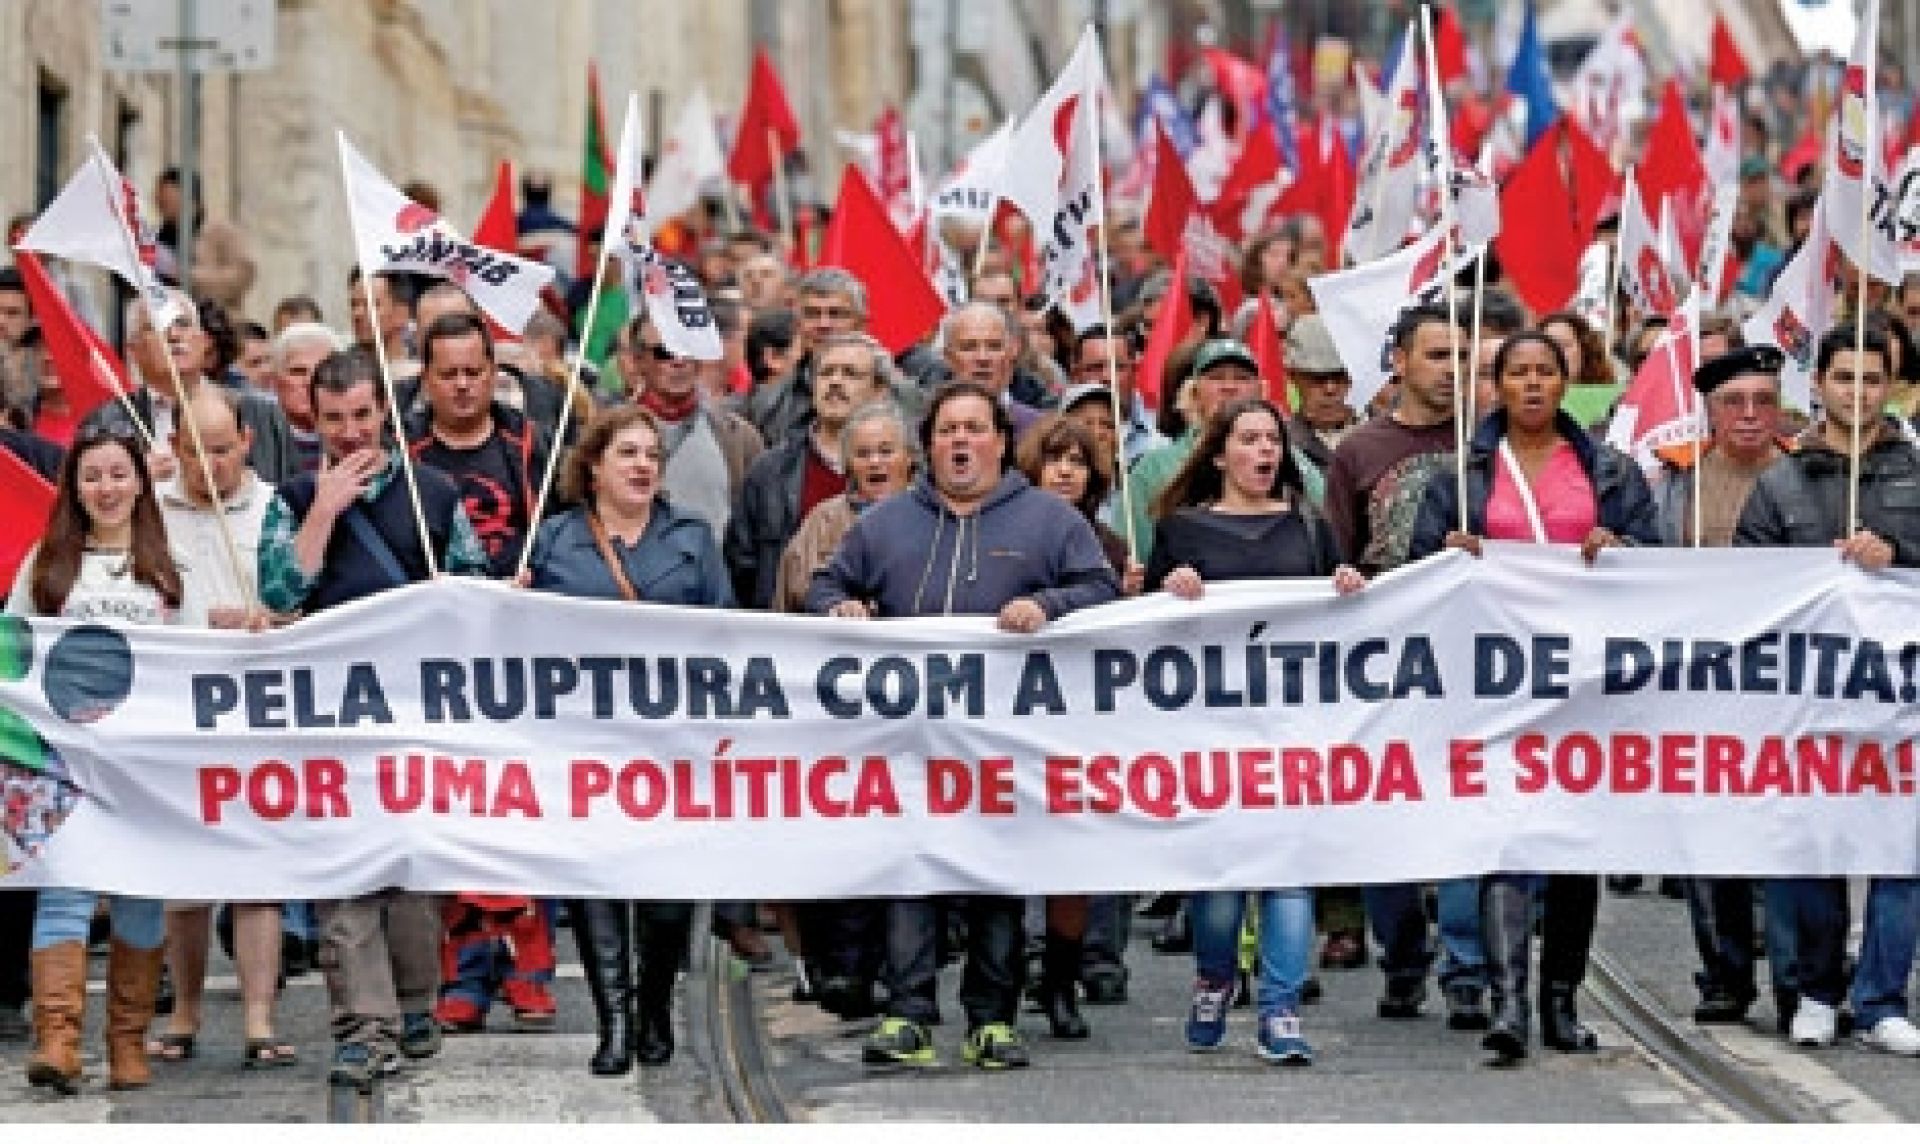 Il Portogallo sospeso tra austerità e alternativa